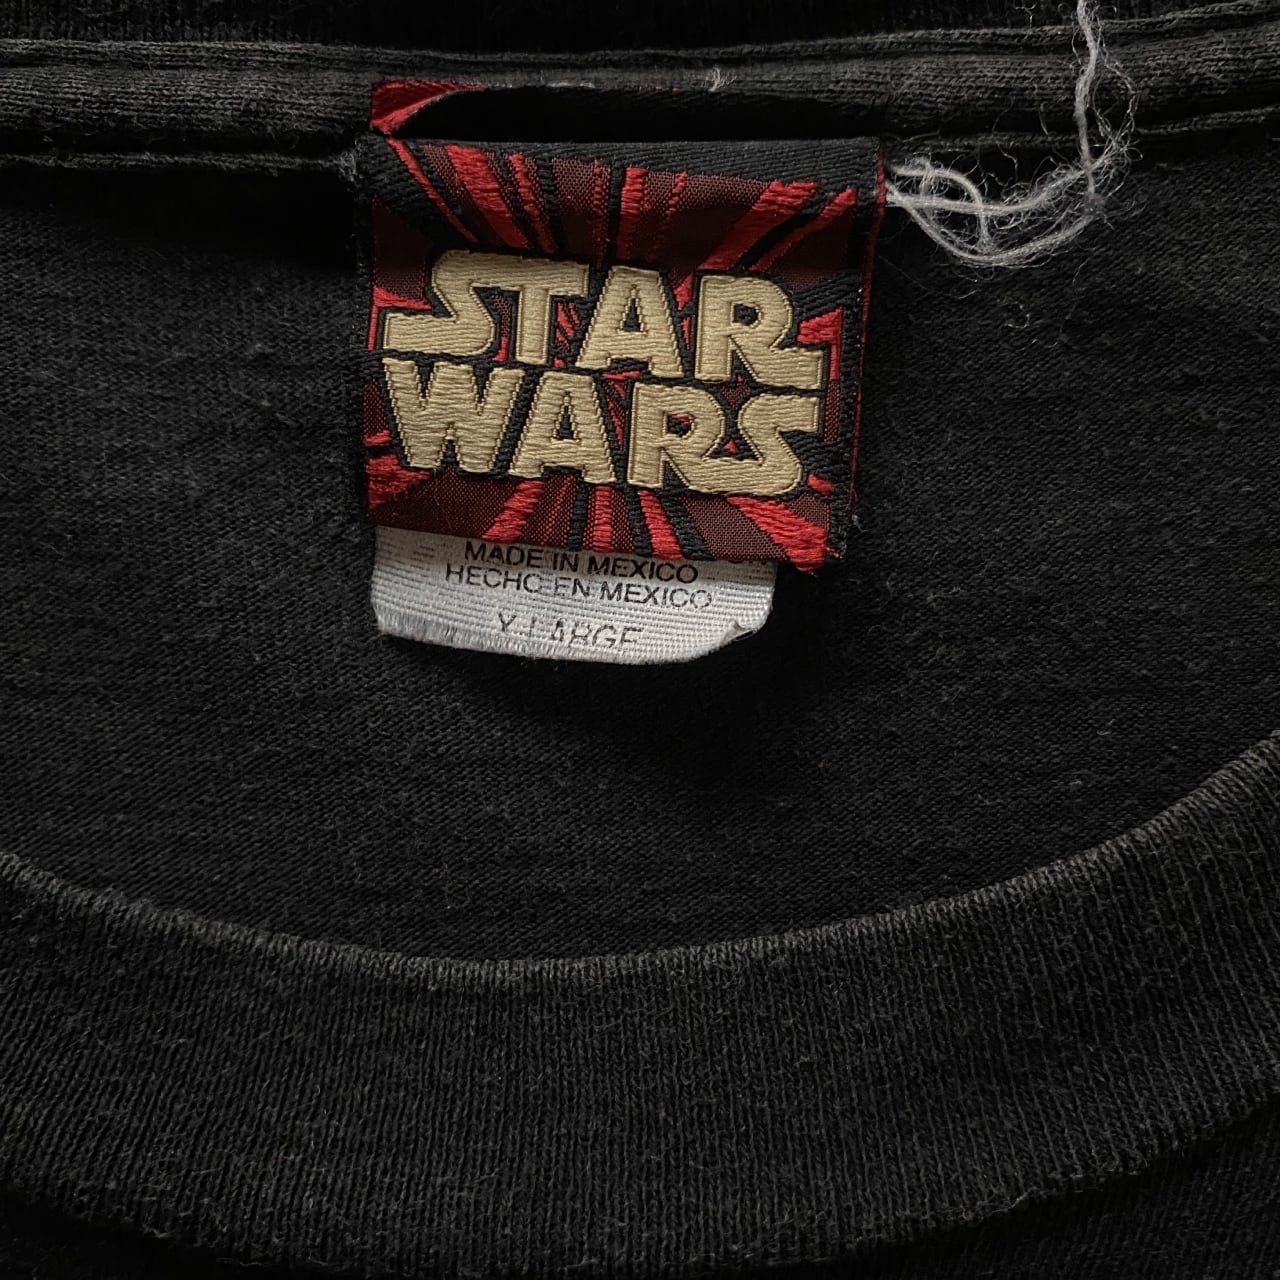 Star Wars スターウォーズ Don't Look Back shirt